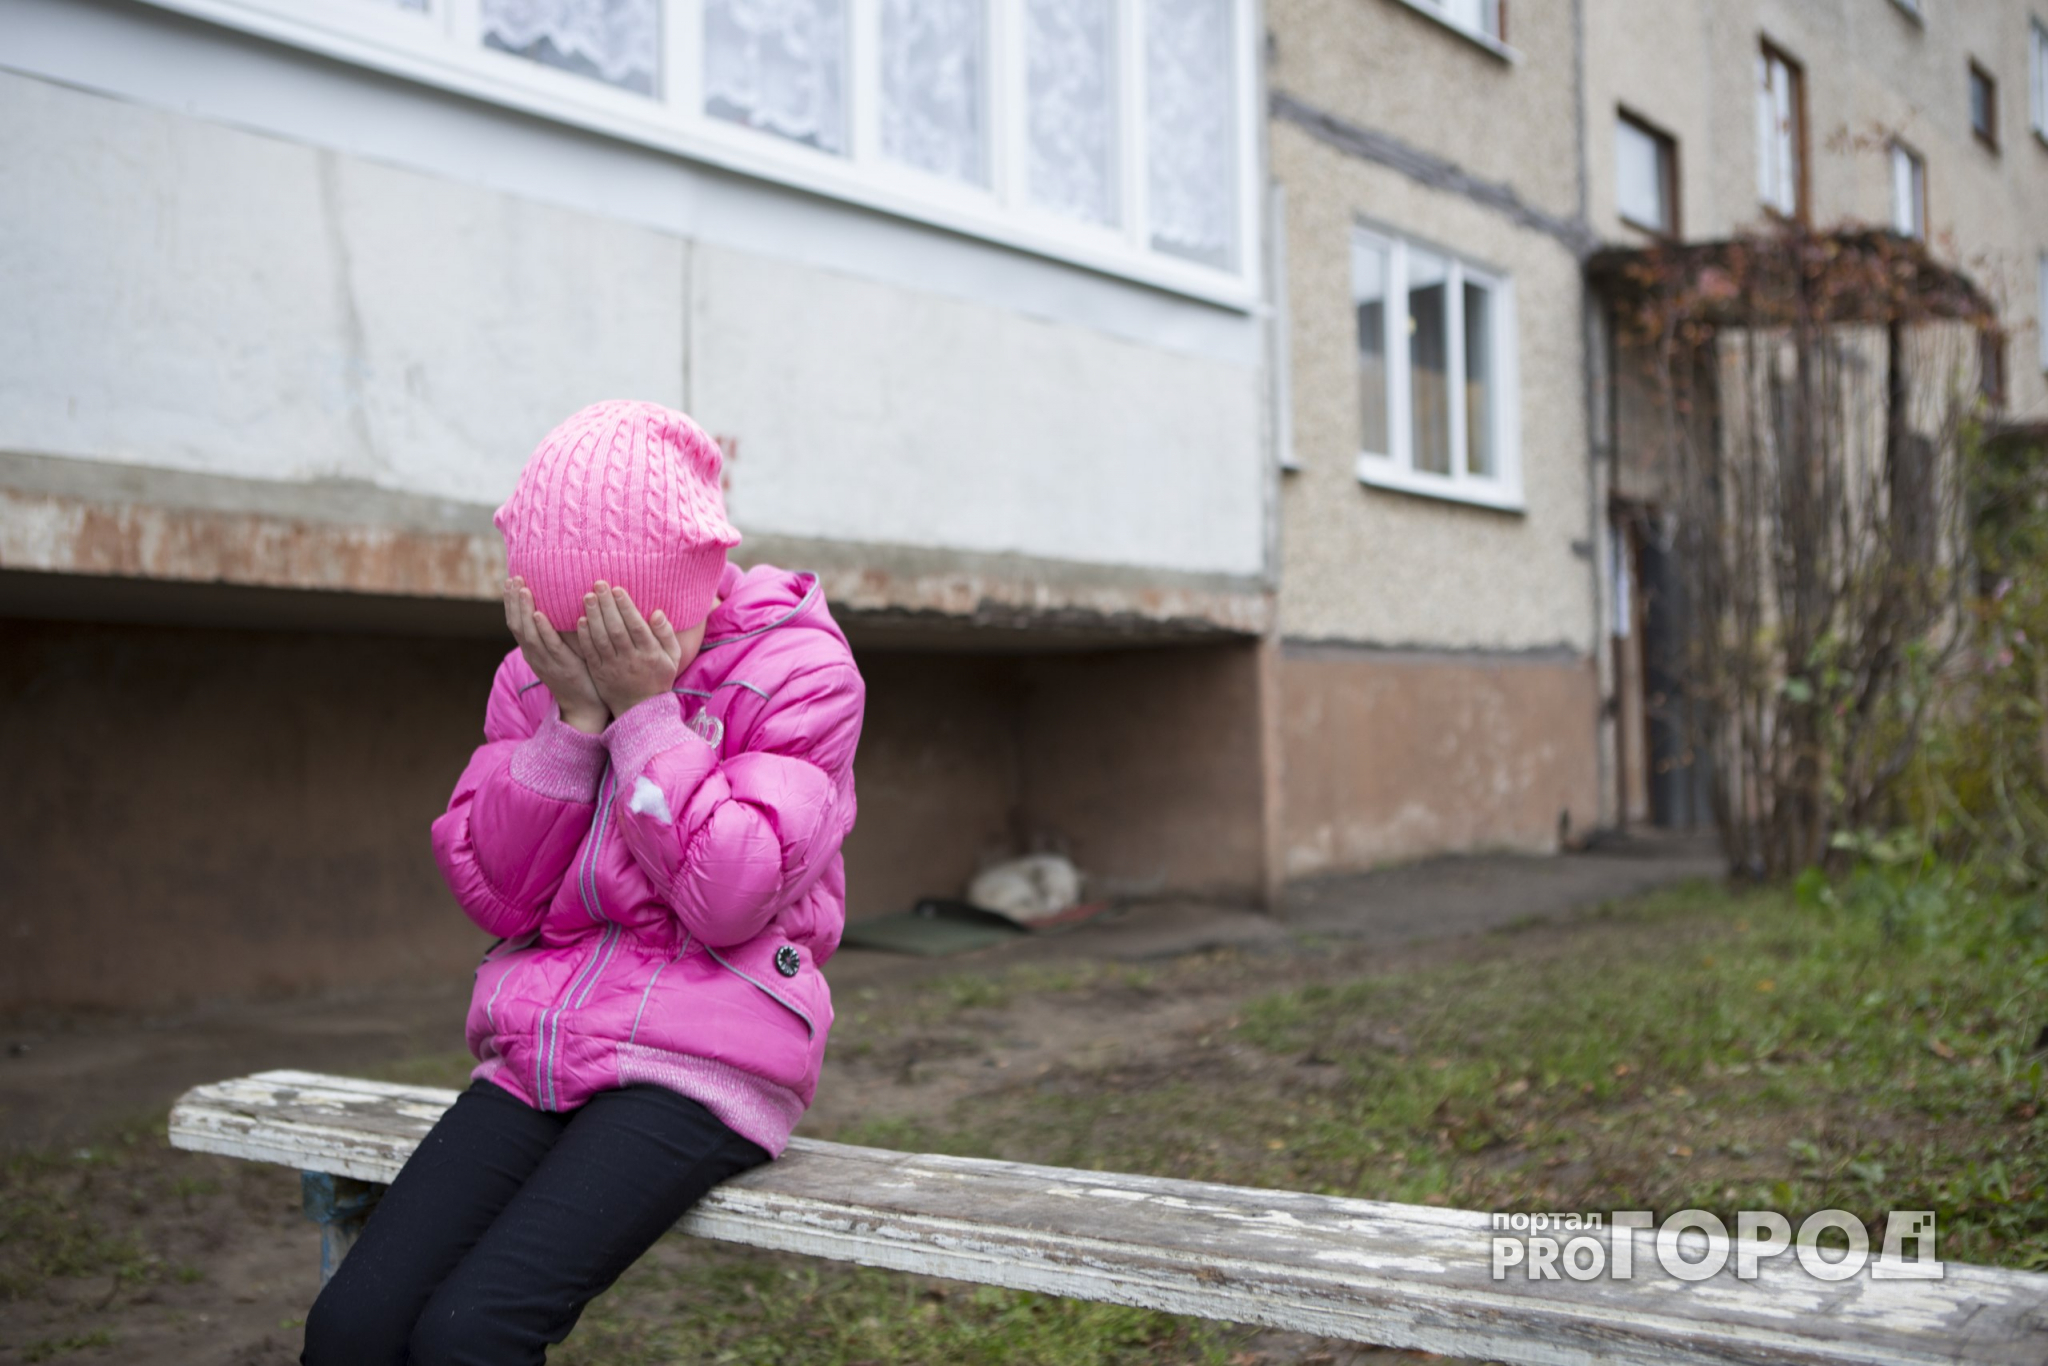 В Кирове на улице мужчина ограбил 7-летнюю девочку